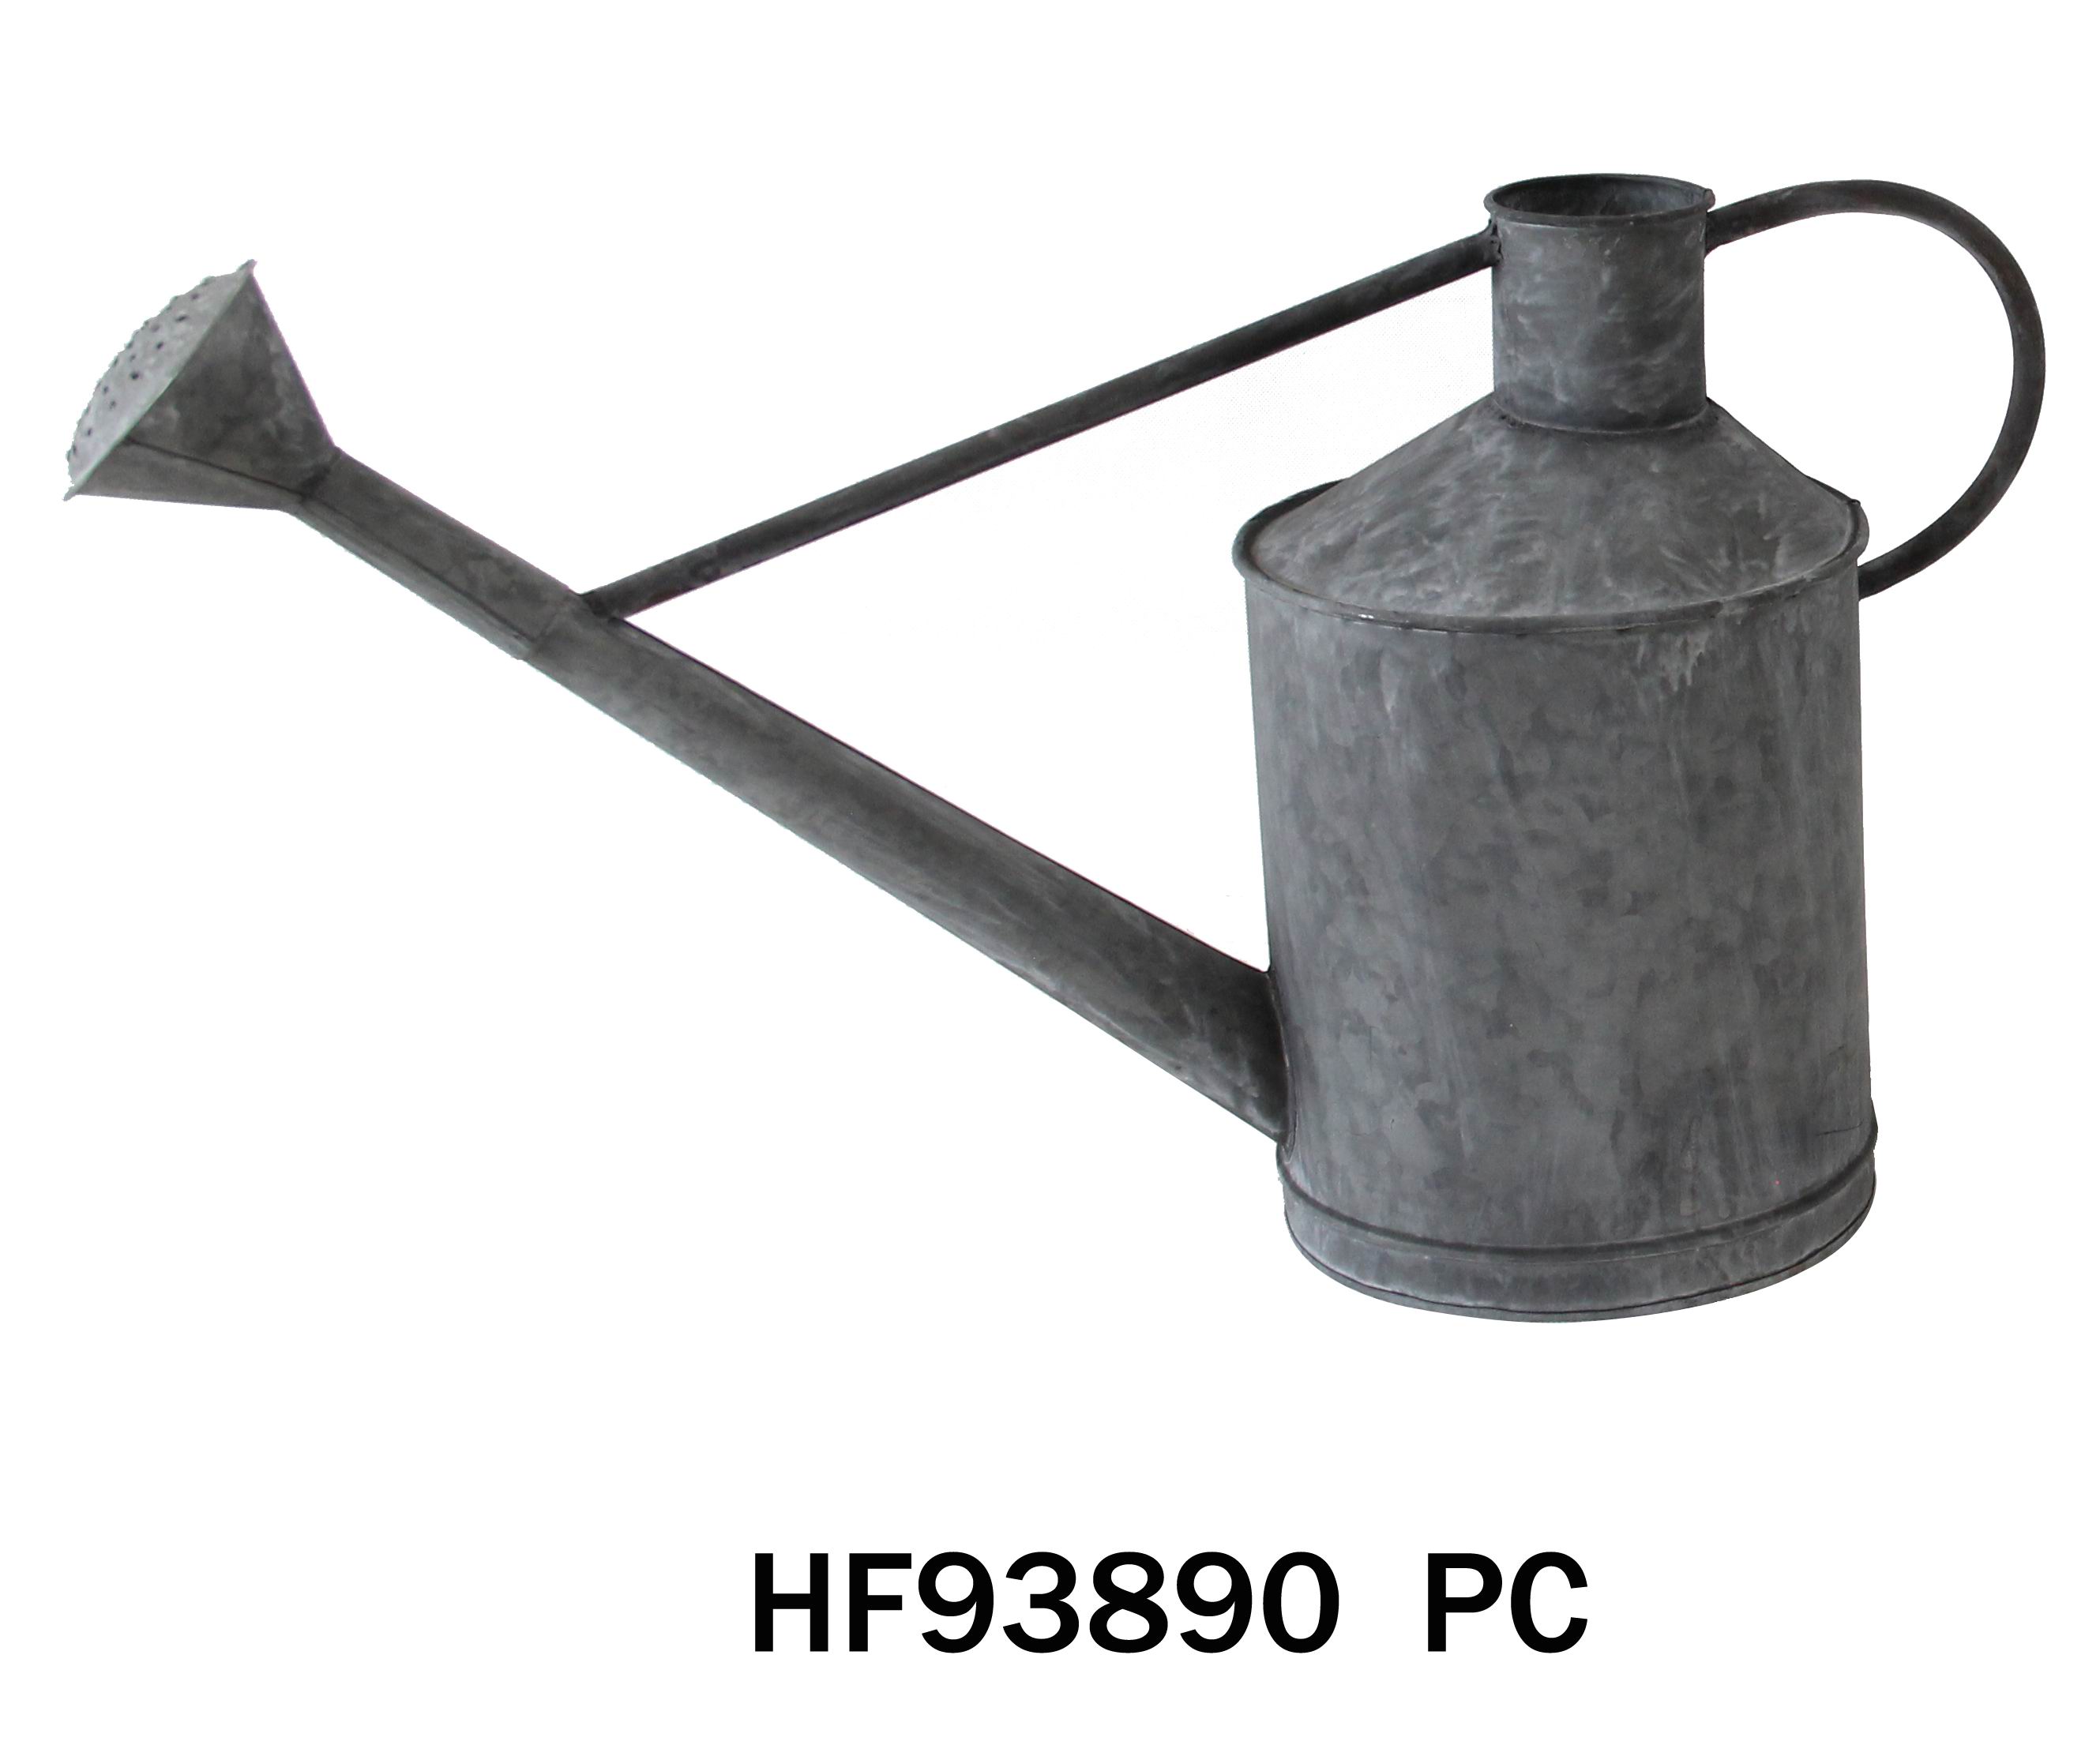 HF93890